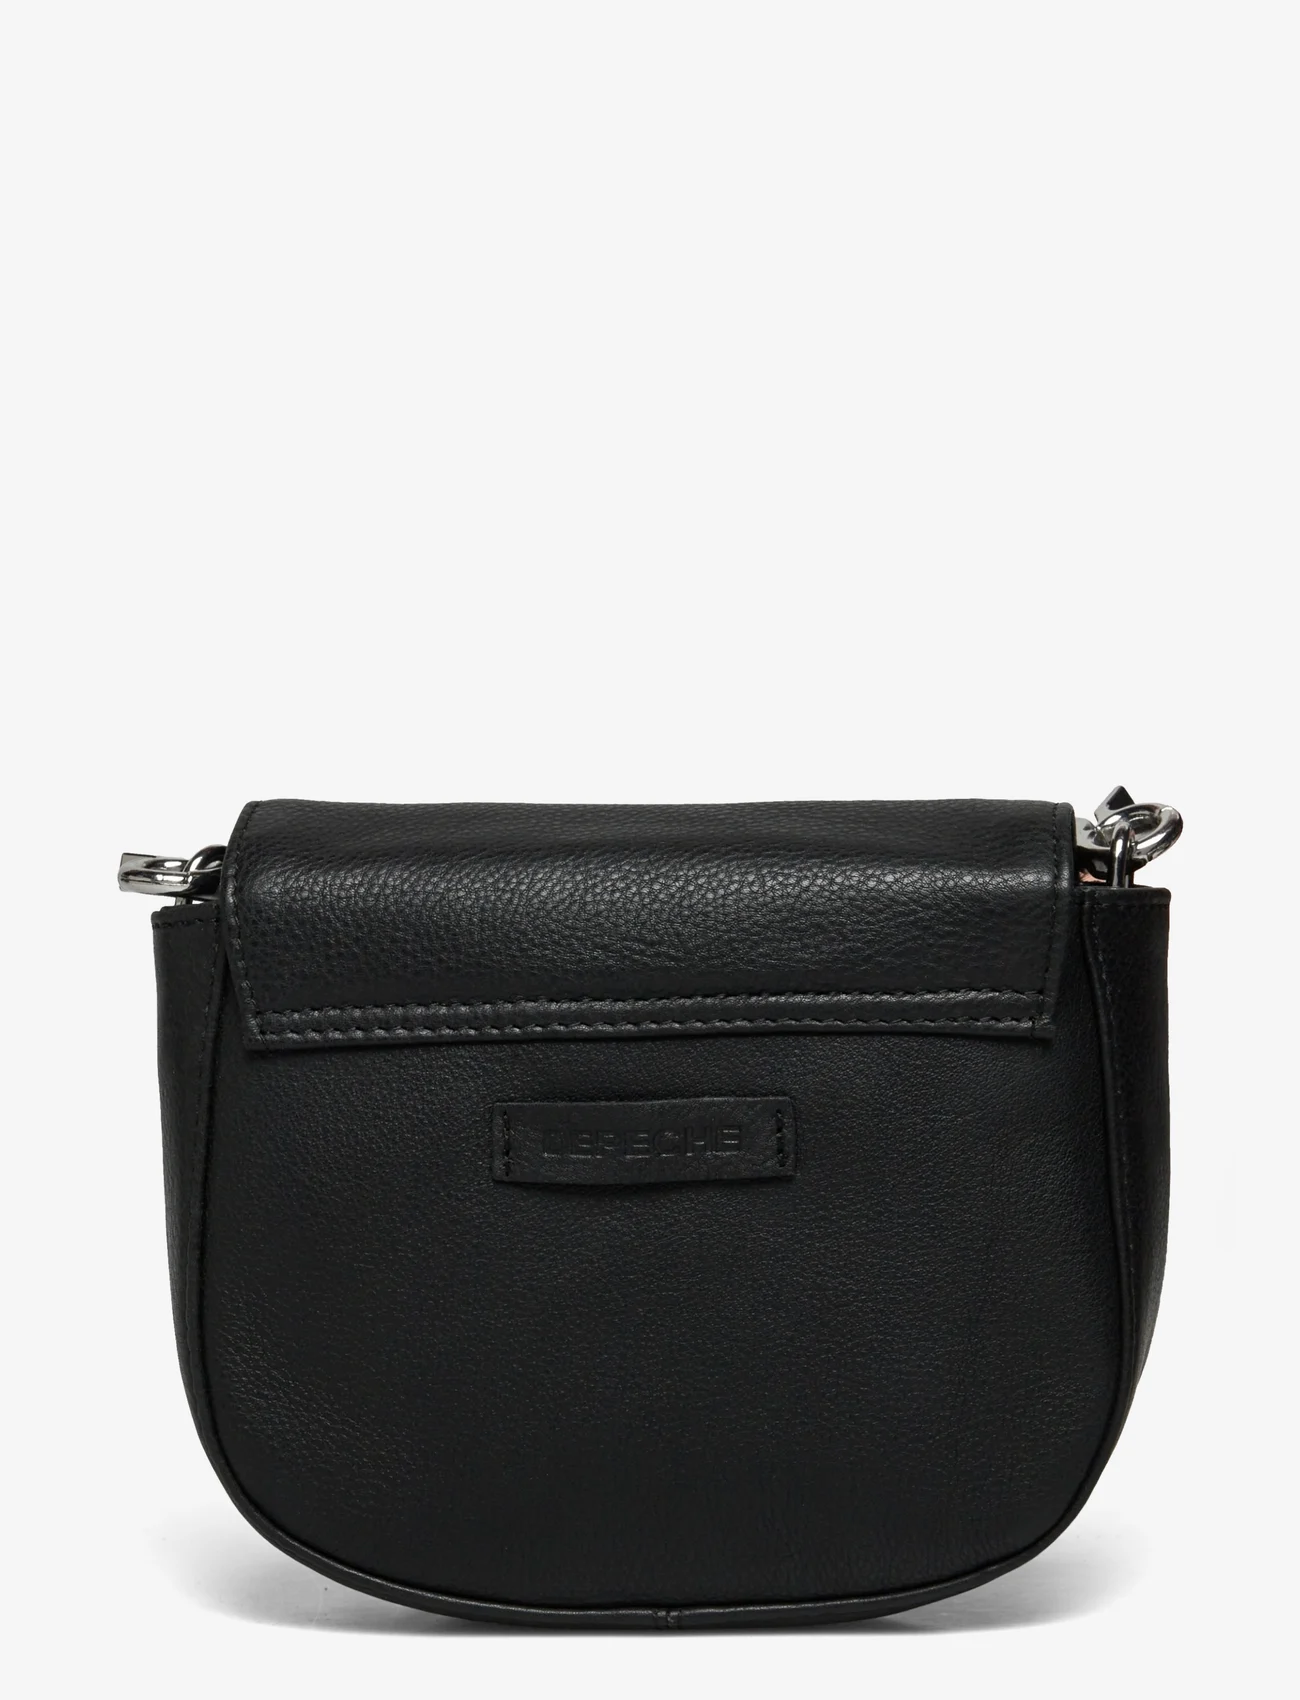 DEPECHE - Small bag / Clutch - odzież imprezowa w cenach outletowych - 099 black (nero) - 1